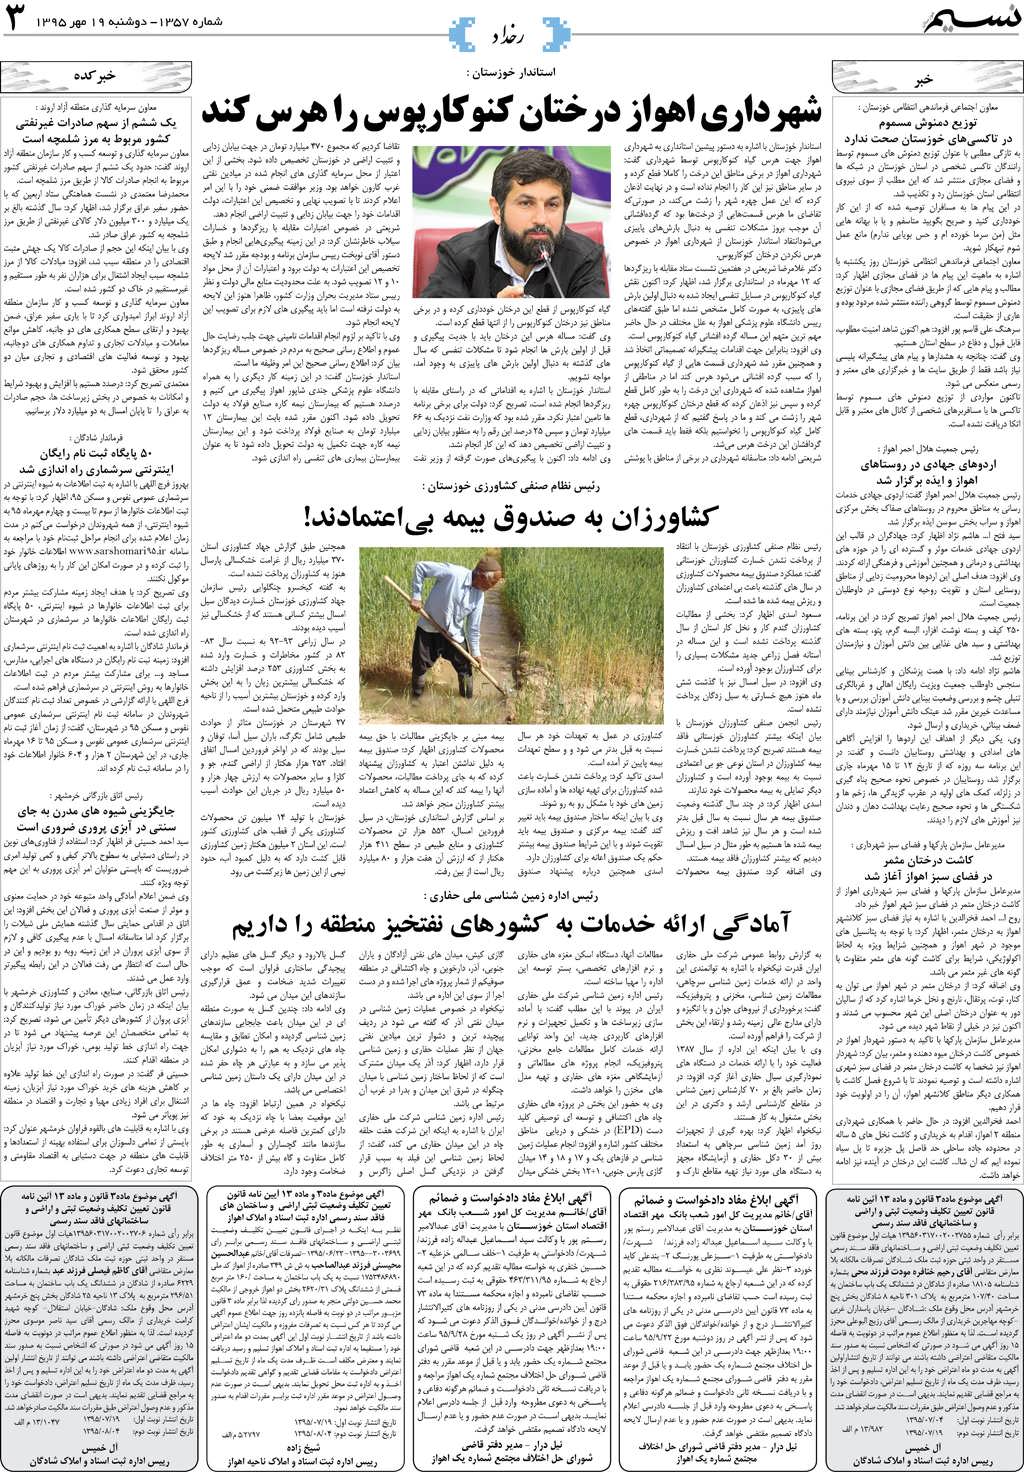 صفحه رخداد روزنامه نسیم شماره 1357